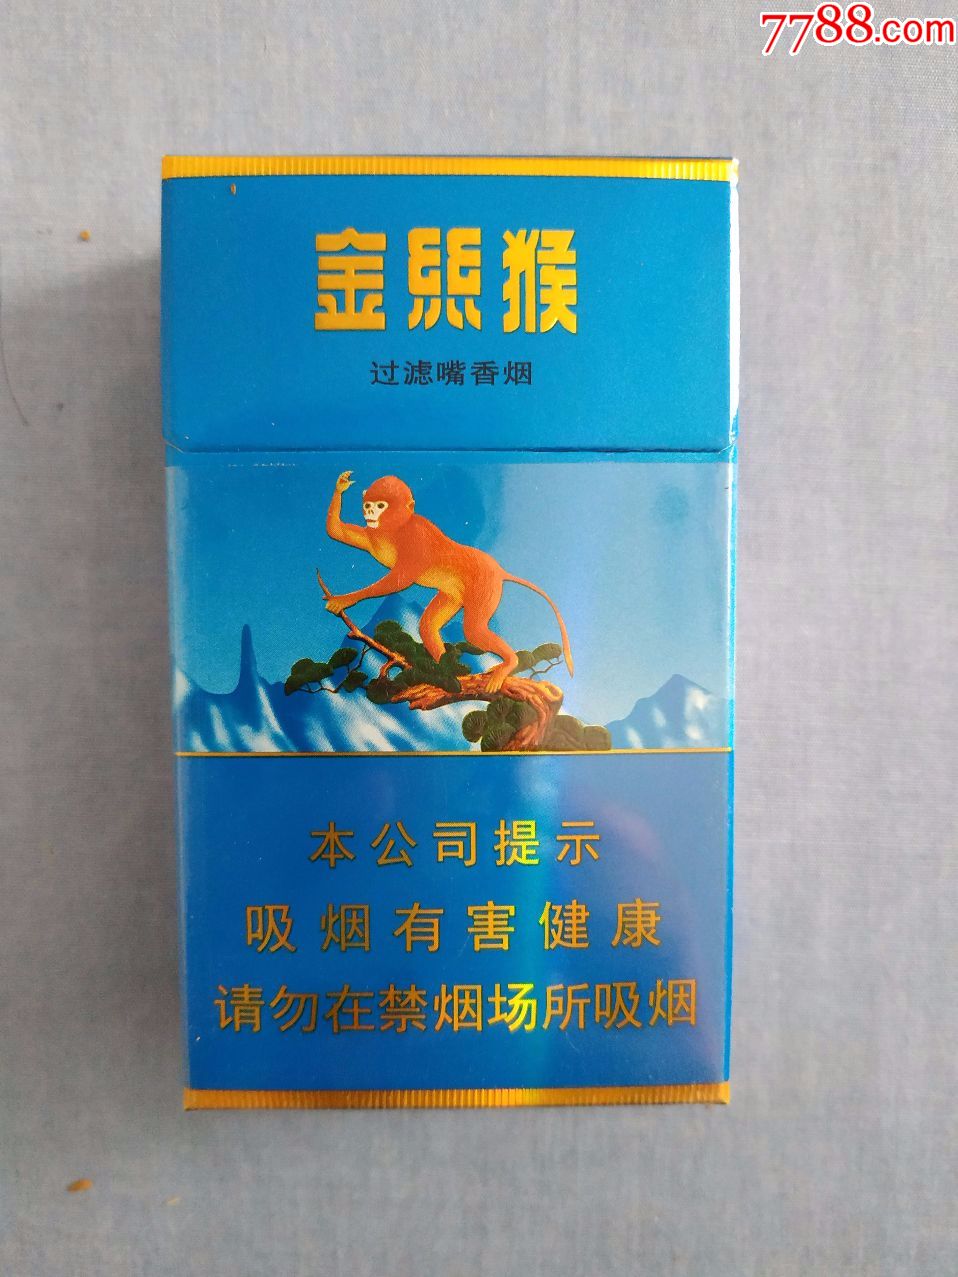 金丝猴香烟软包图片